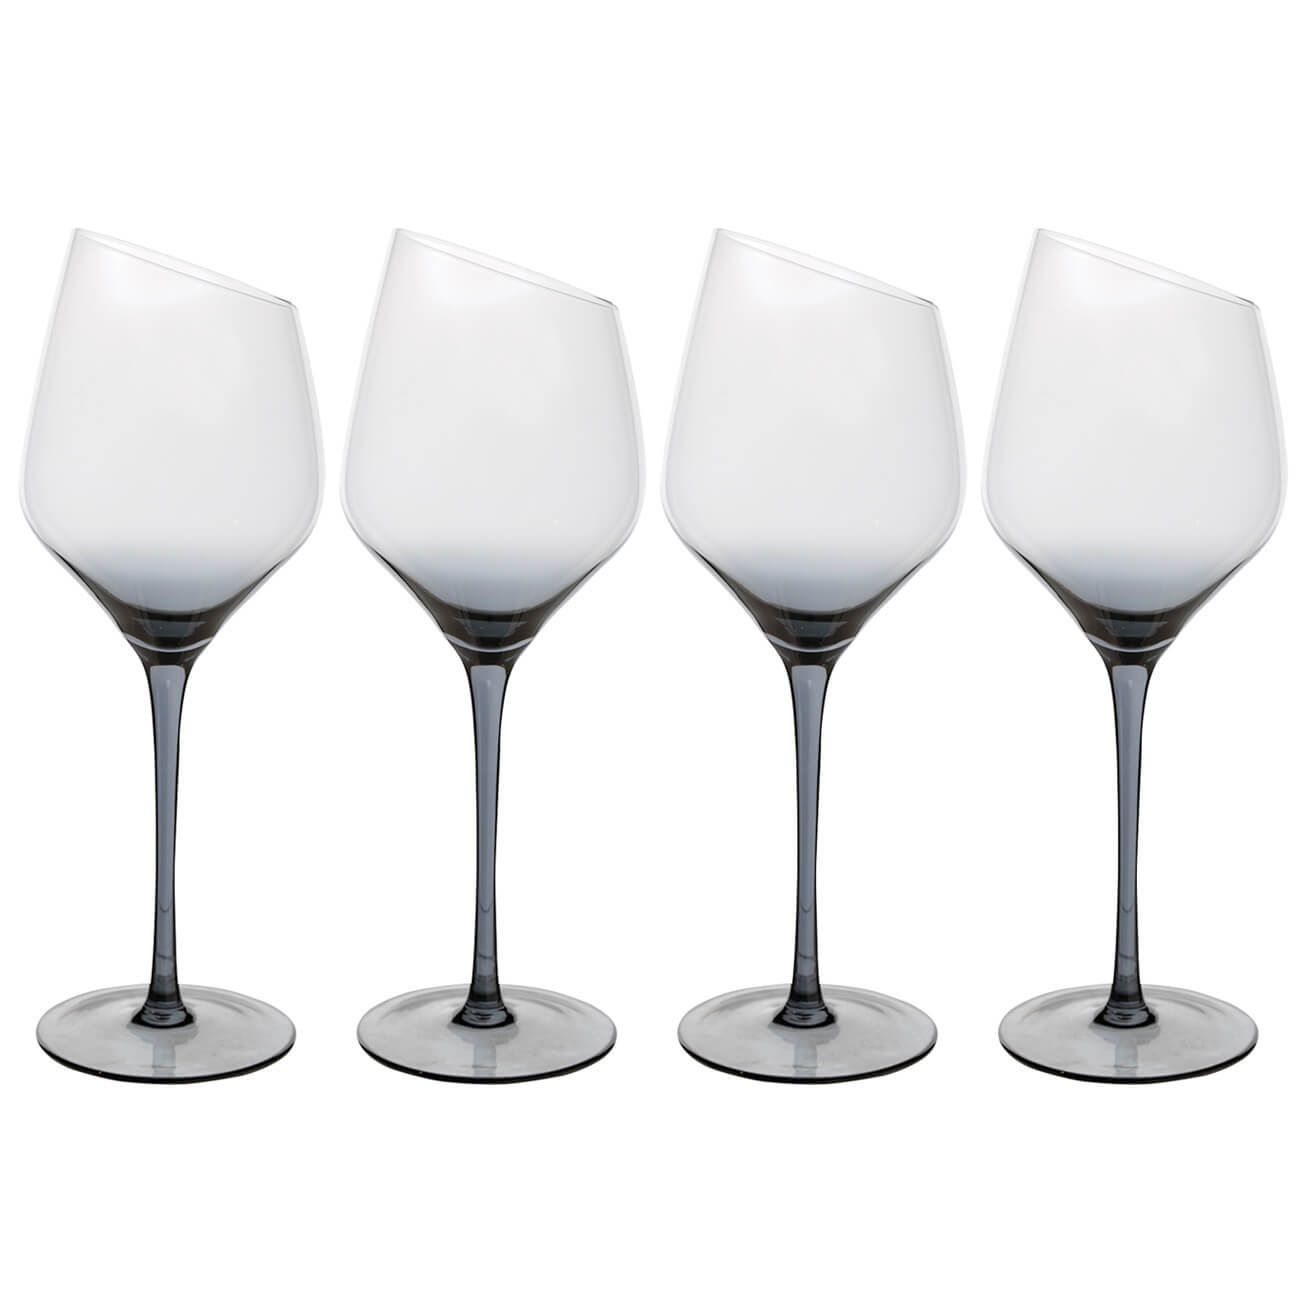 Бокал для белого вина, 460 мл, 4 шт, стекло, серый, Charm L Color бокал для белого вина 460 мл 2 шт стекло charm l